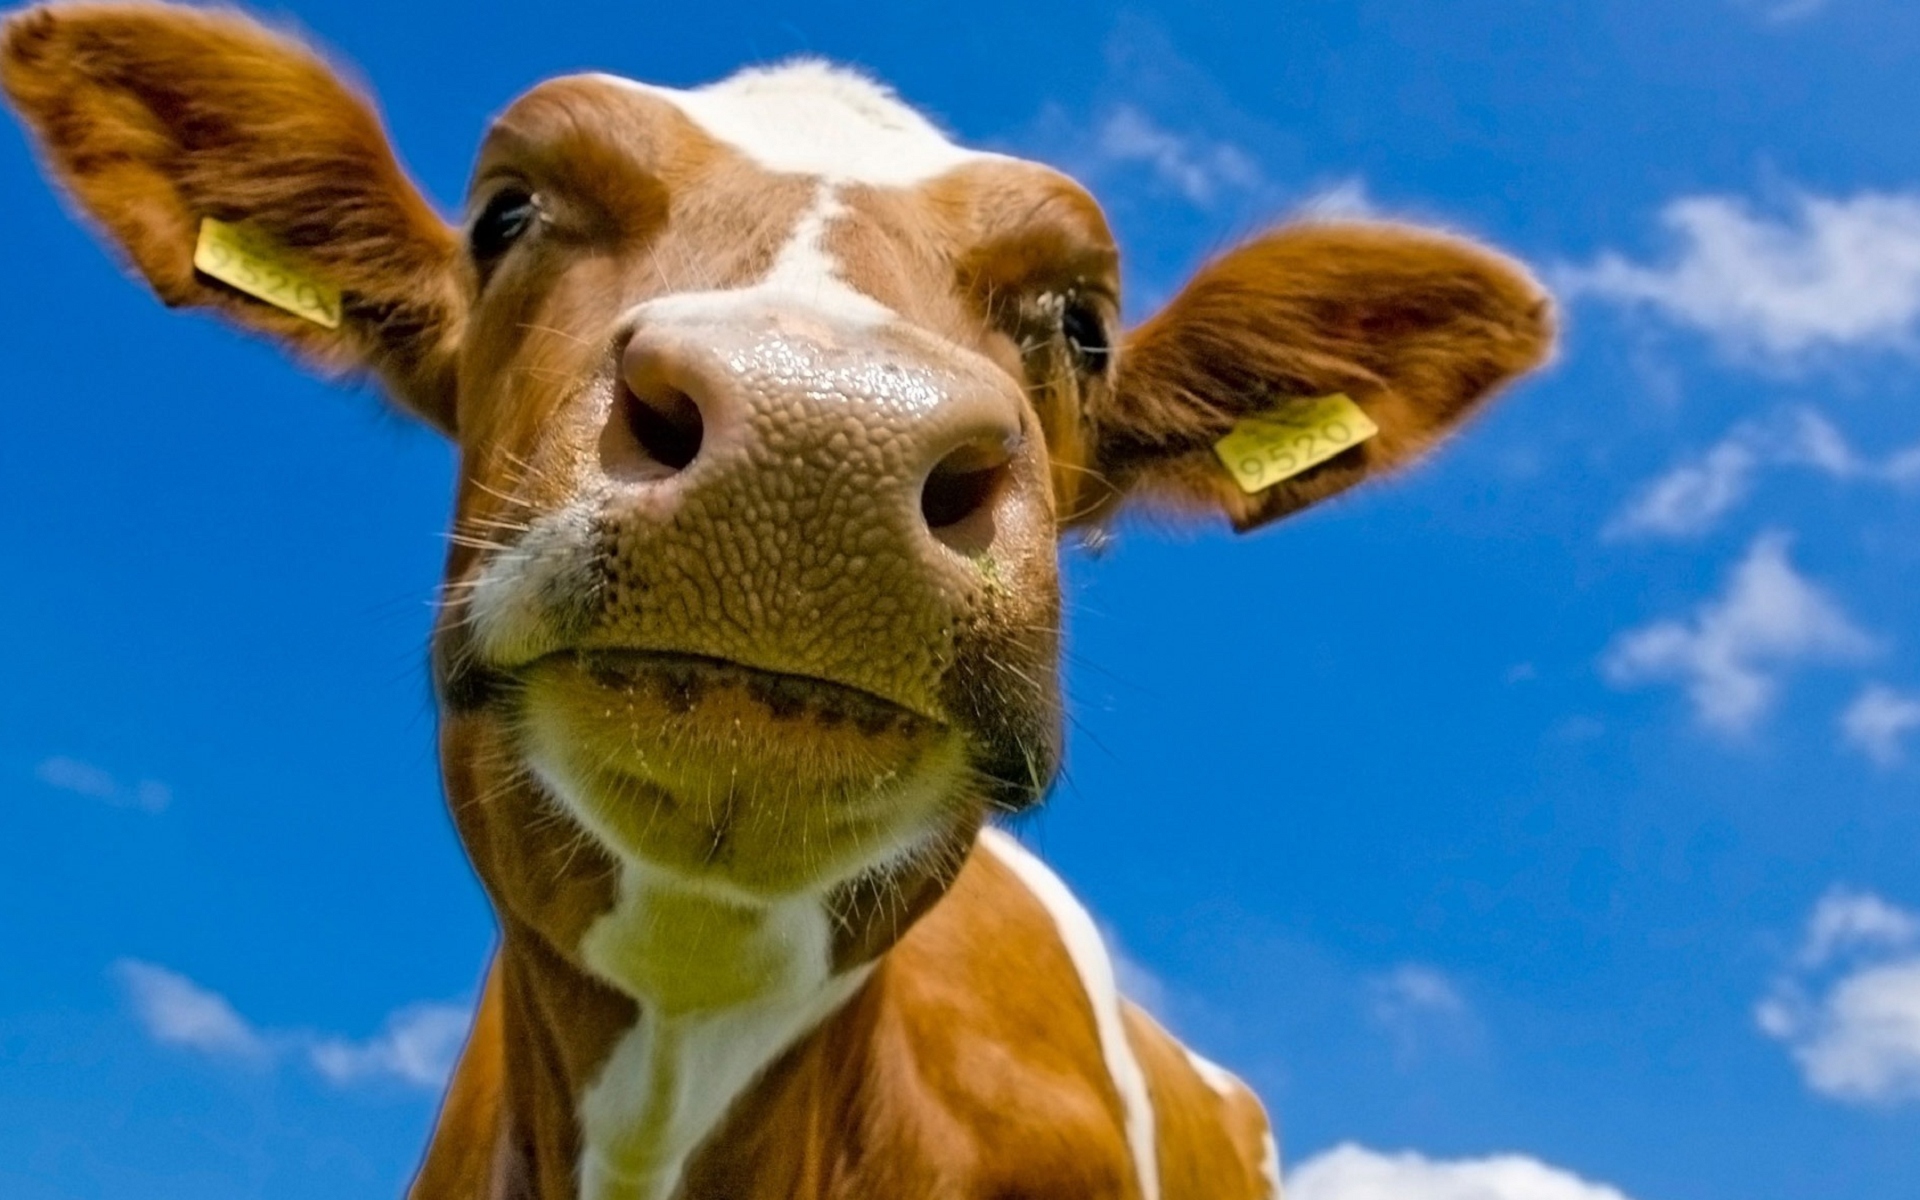 Dừng lại để chiêm ngưỡng đầu bò trong hình ảnh. Đôi mắt tròn to và sừng cong hiện lên trên đầu chú bò, khiến bạn không thể rời mắt khỏi nó. Hãy cùng ngắm nhìn vẻ đẹp độc đáo của đầu bò này.